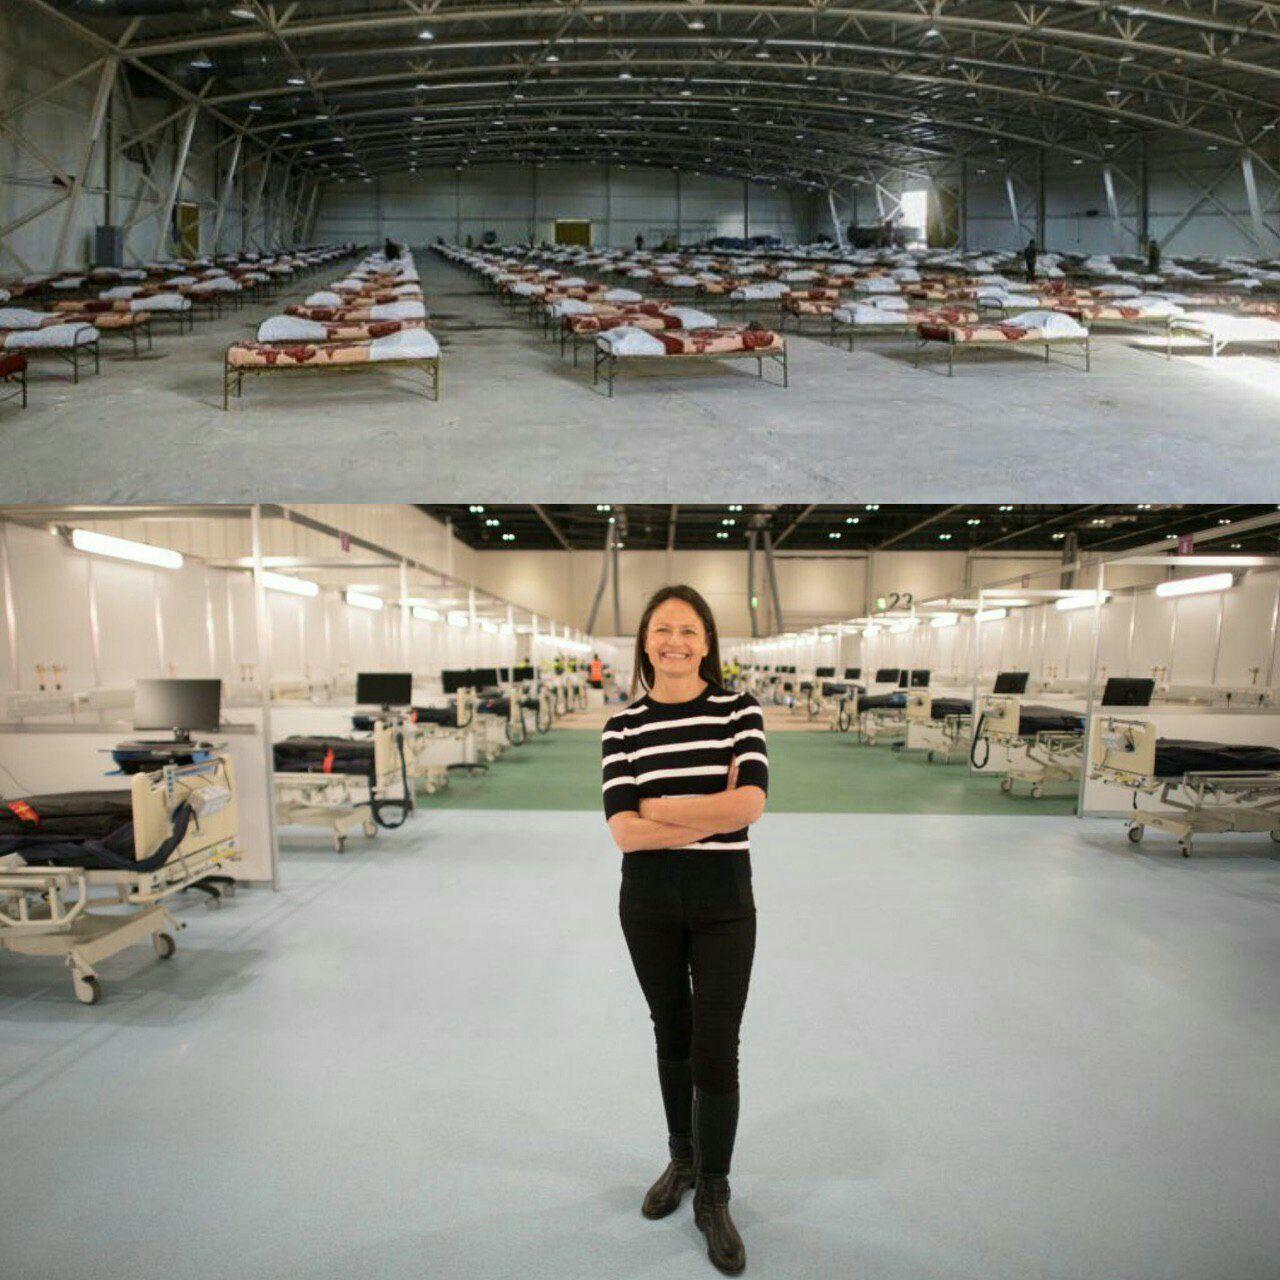 هر دو بیمارستان ،دو هزار تختخوابی هستند اما این کجا و آن کجا!